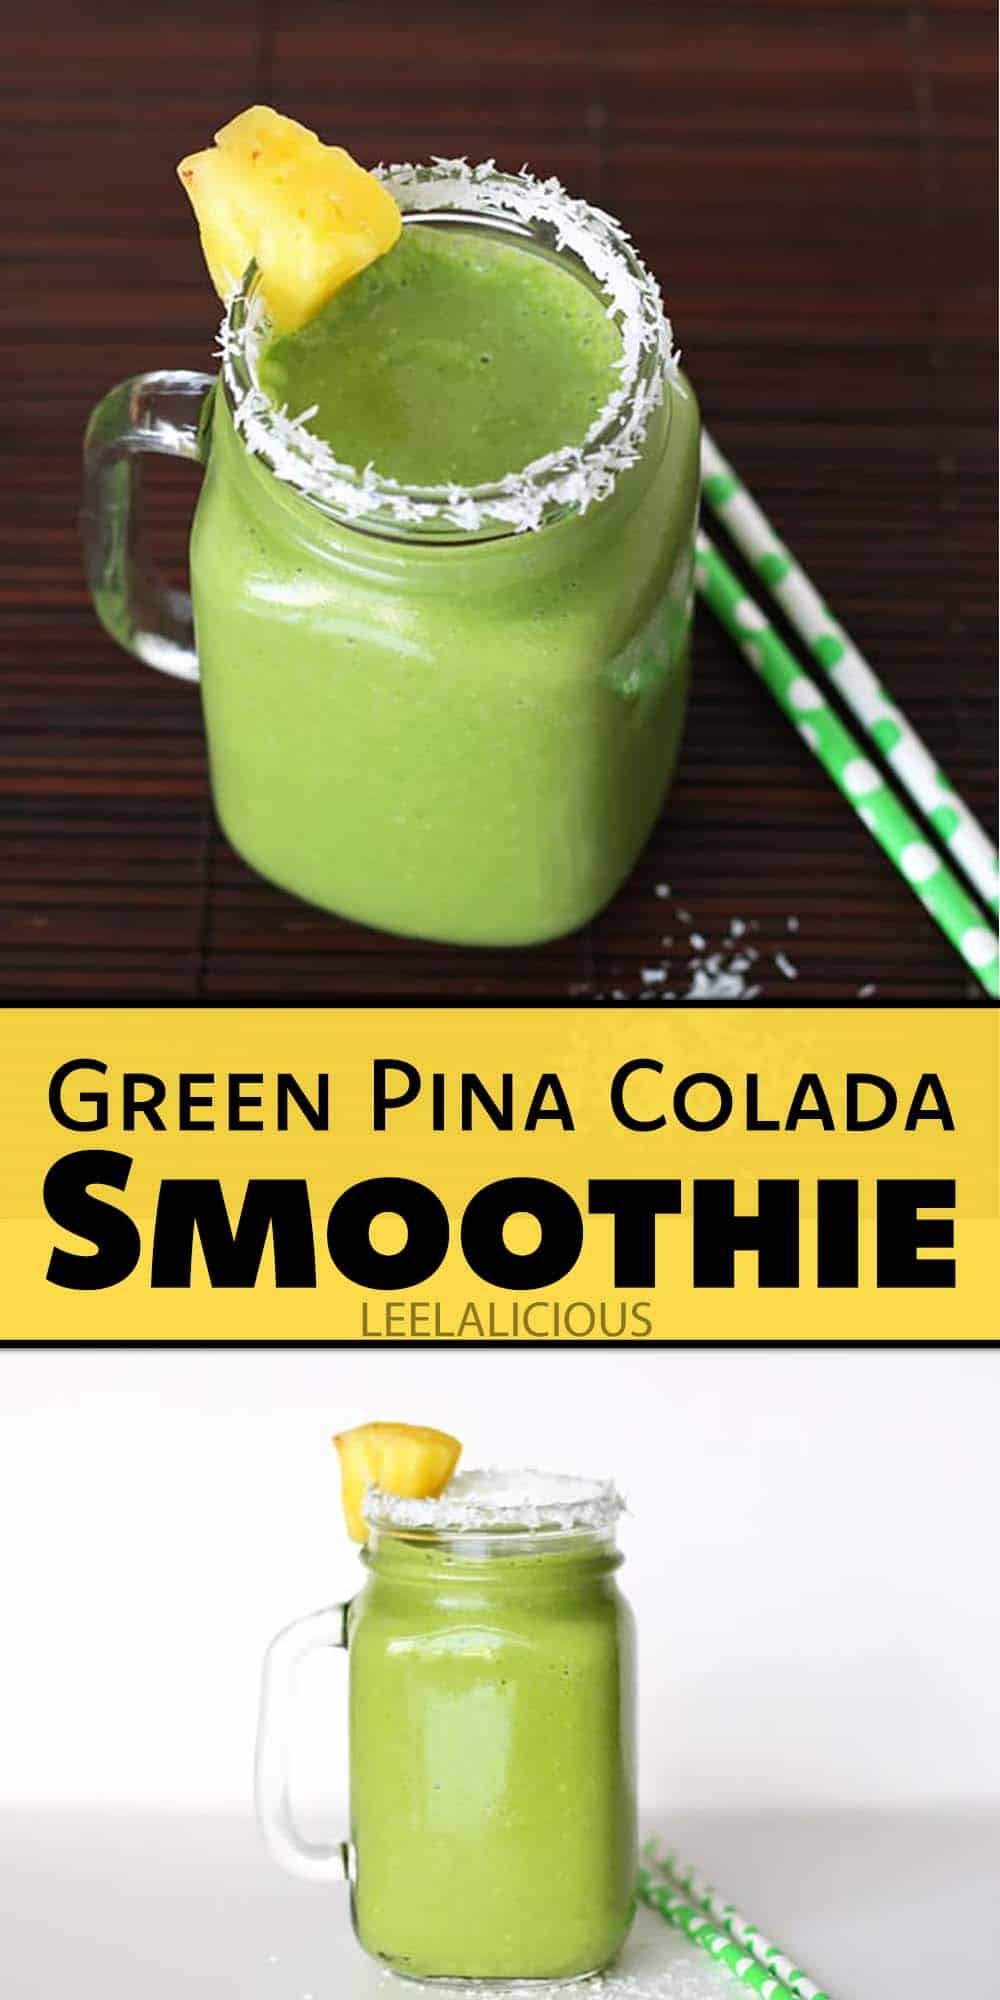 Green Pina Colada Smoothie